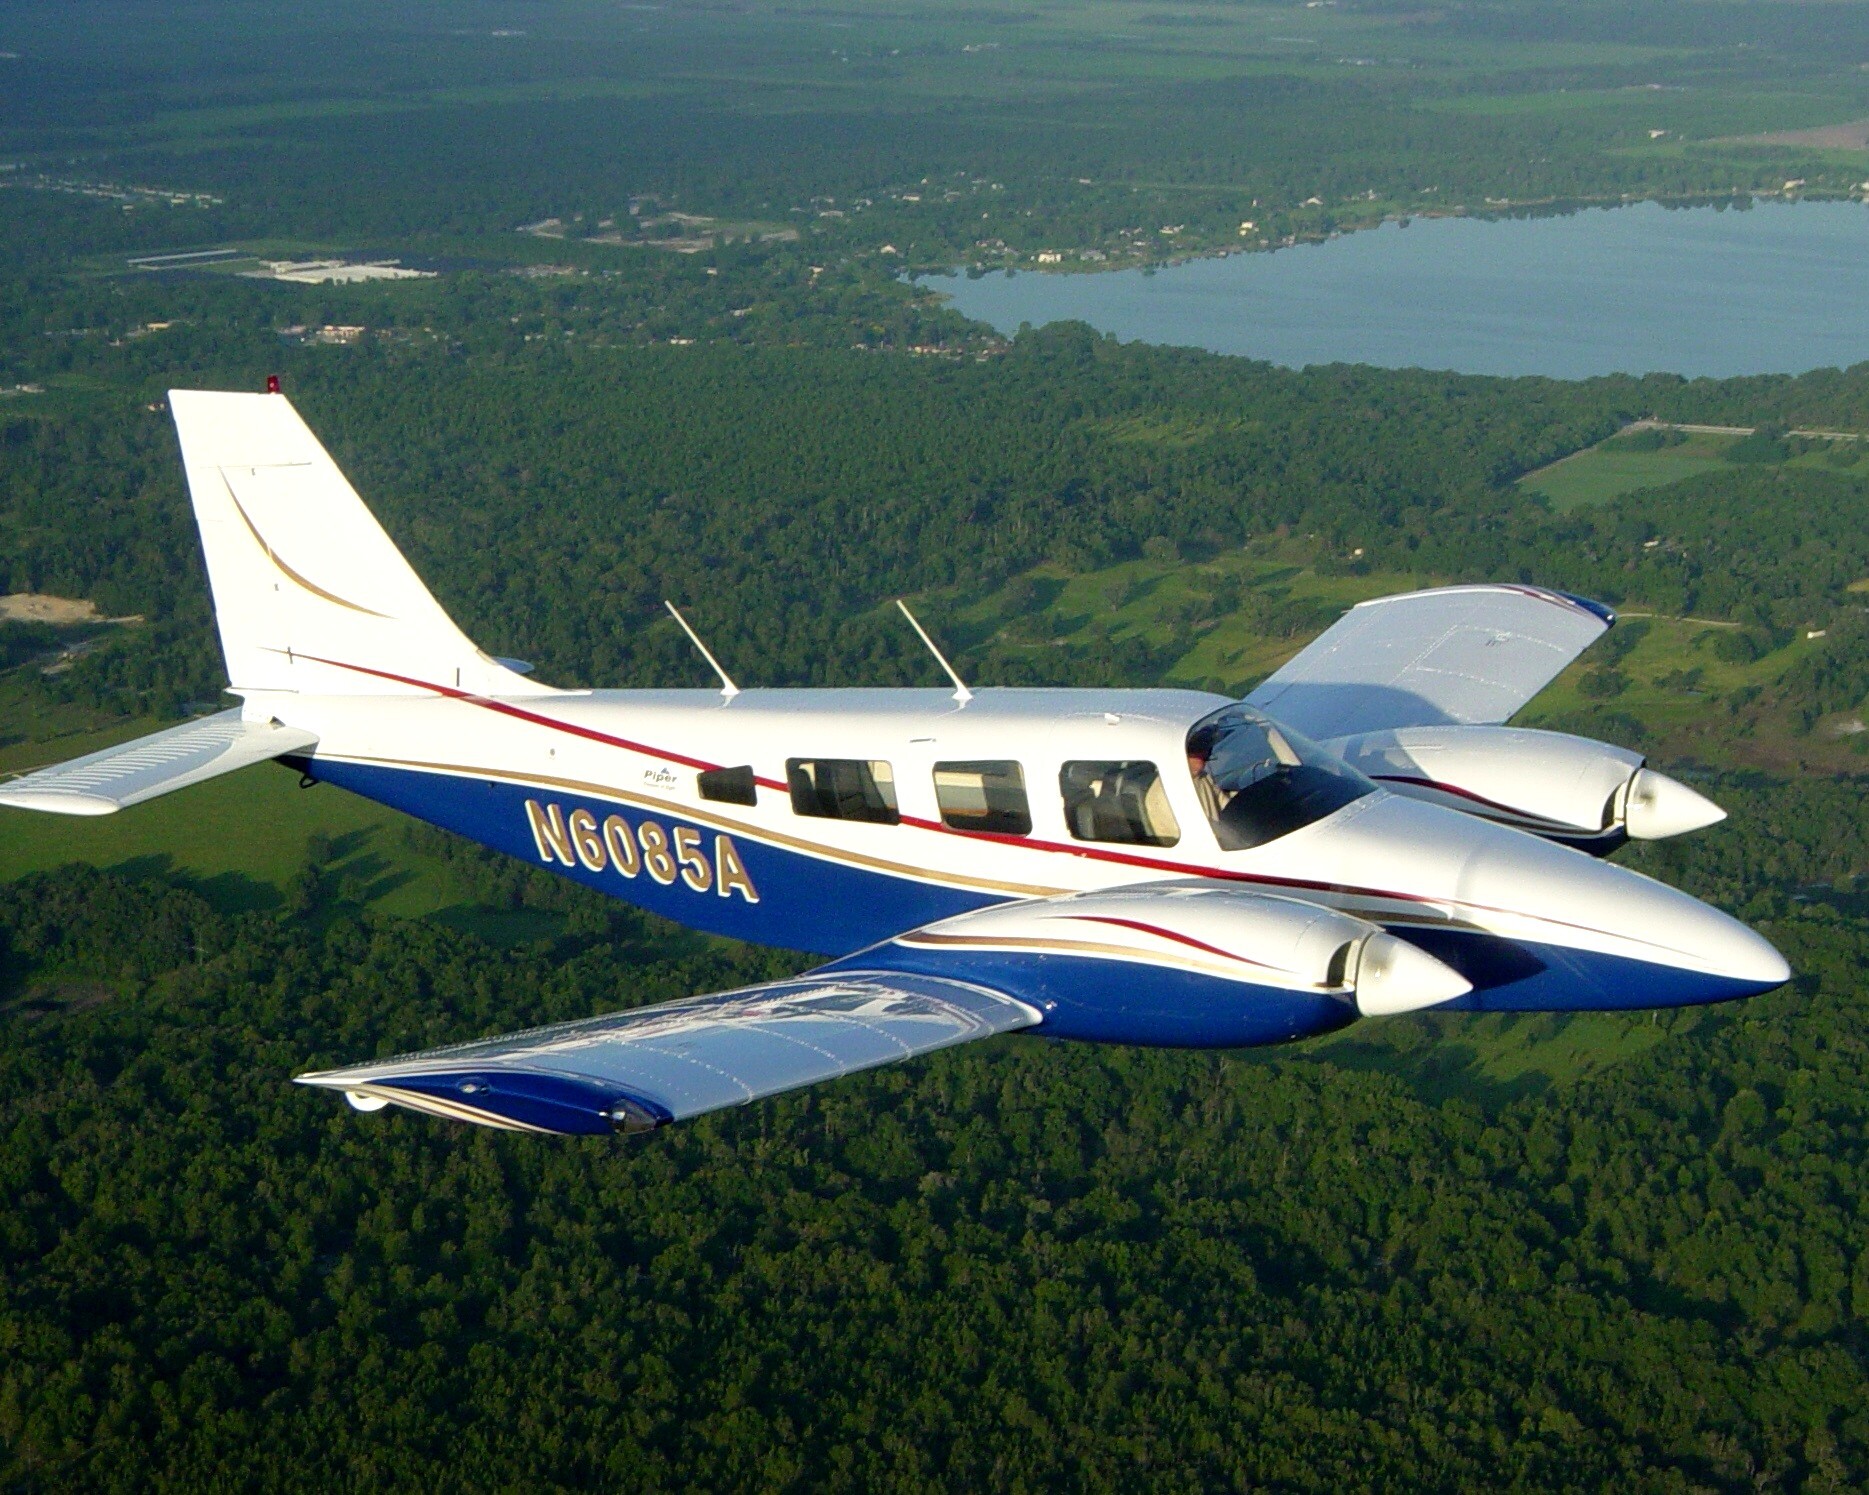 Piper PA-34-220T